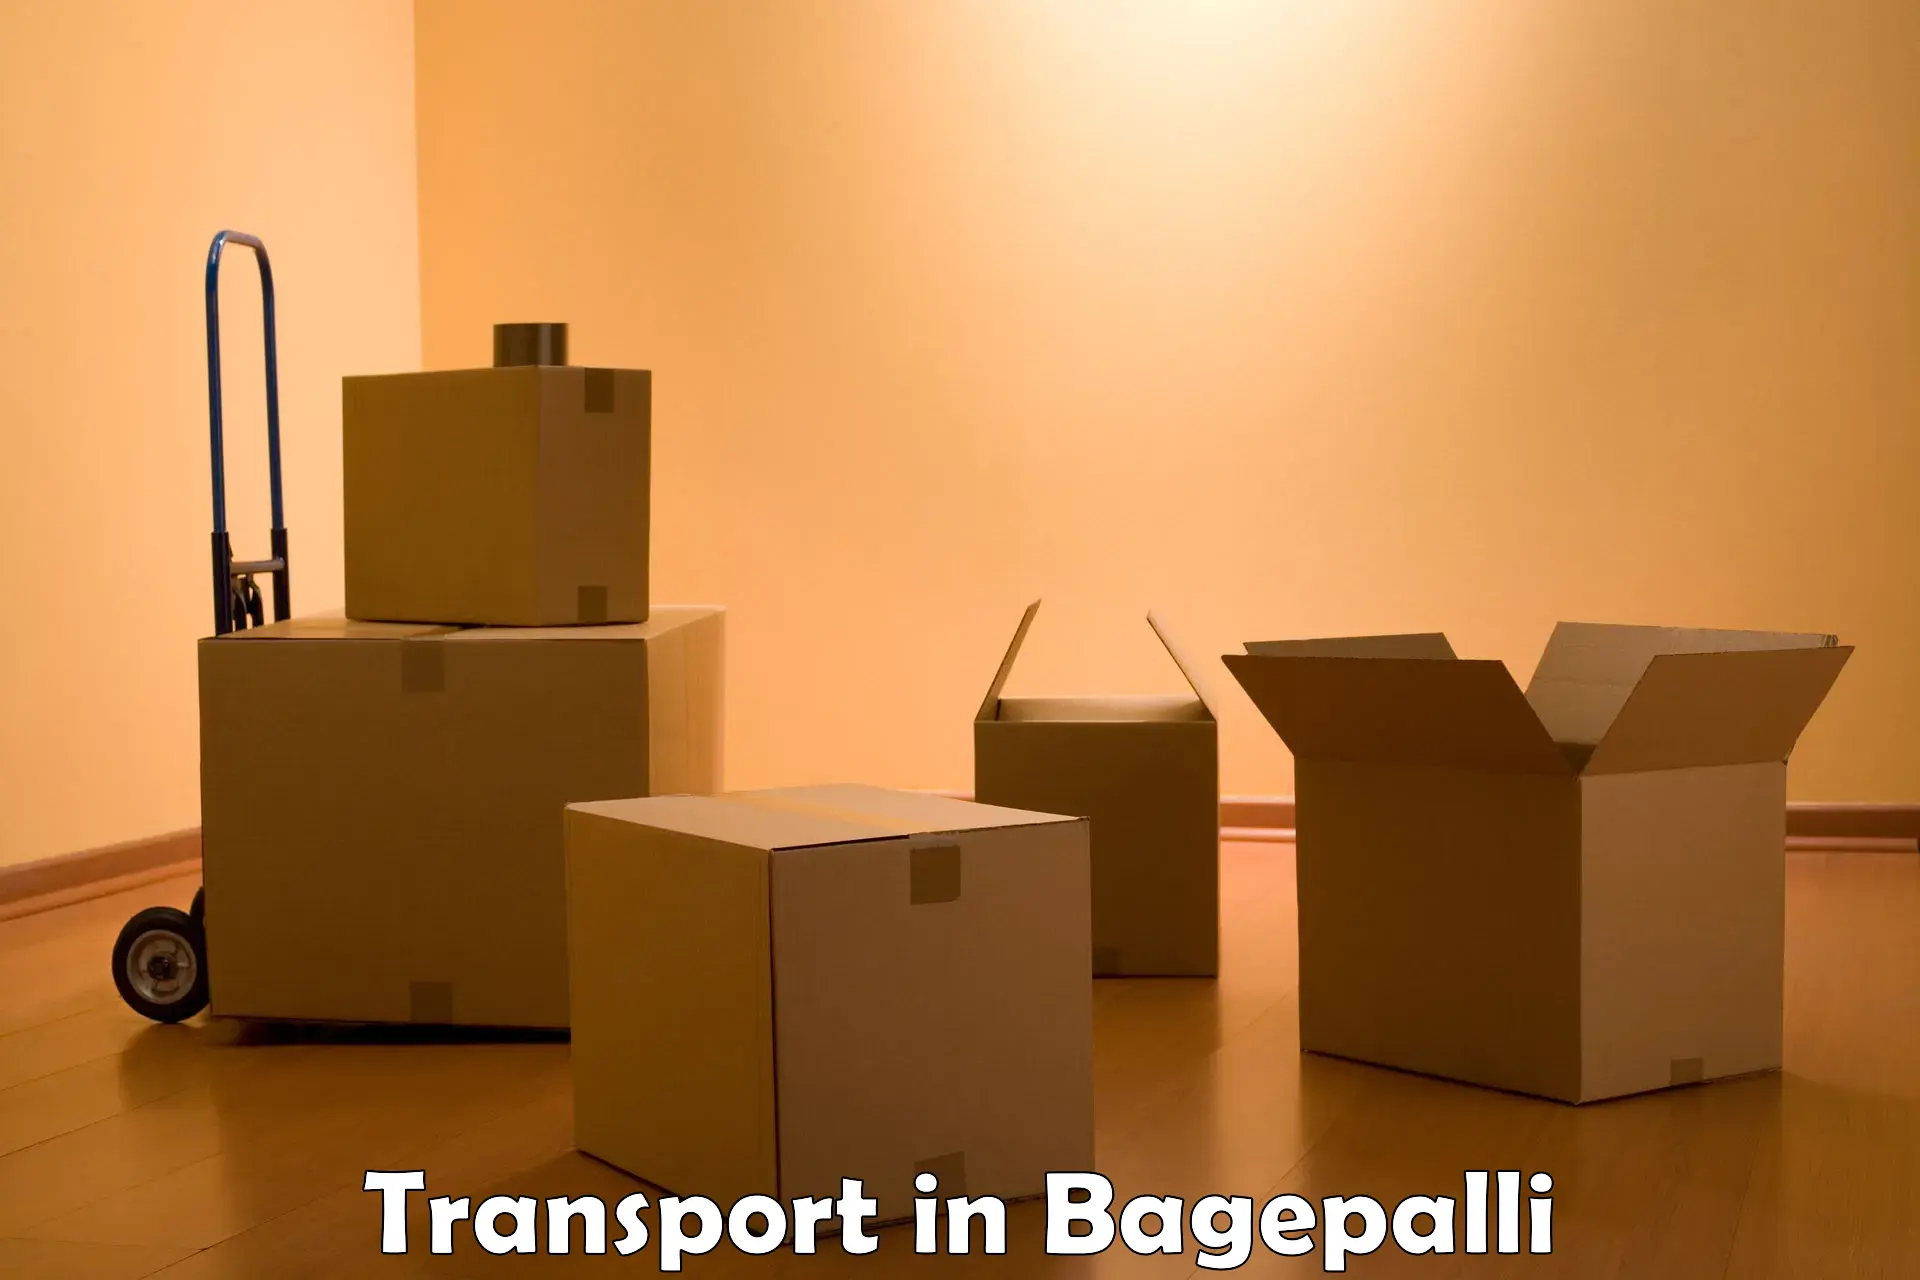 Furniture transport service in Bagepalli